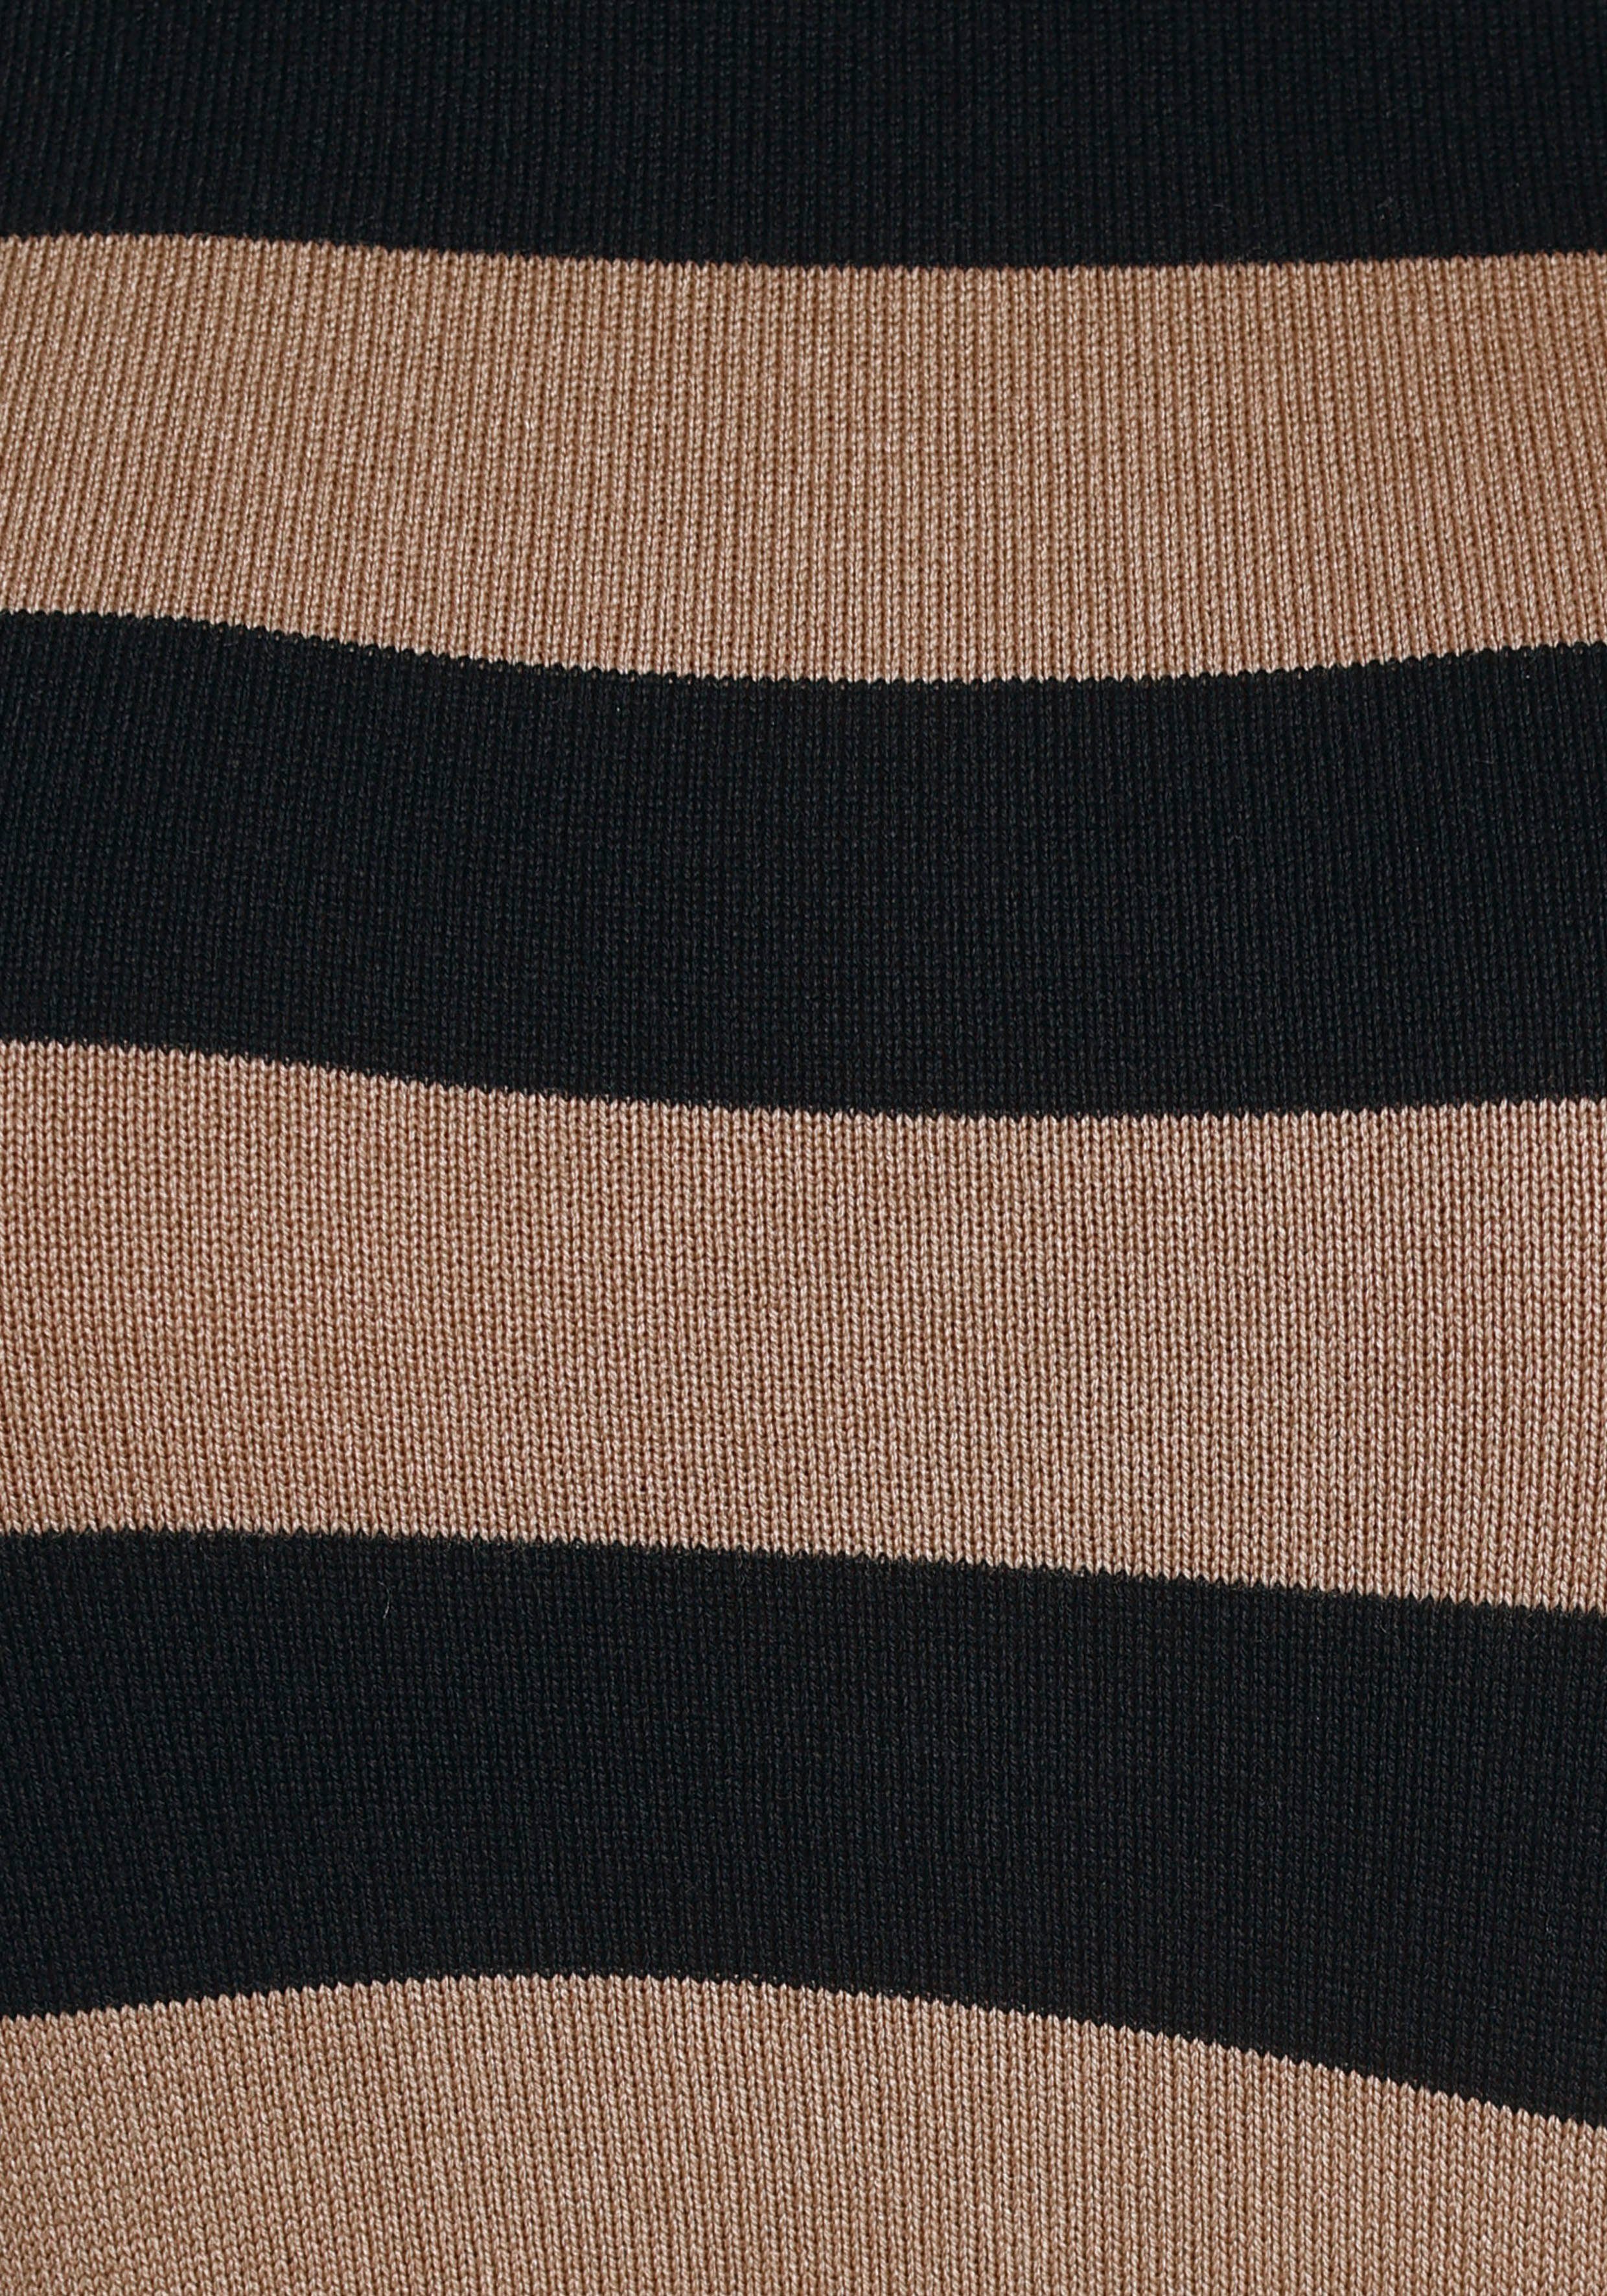 Tamaris Rollkragenpullover schwarz-camelfarben-gestreift im Streifendesign